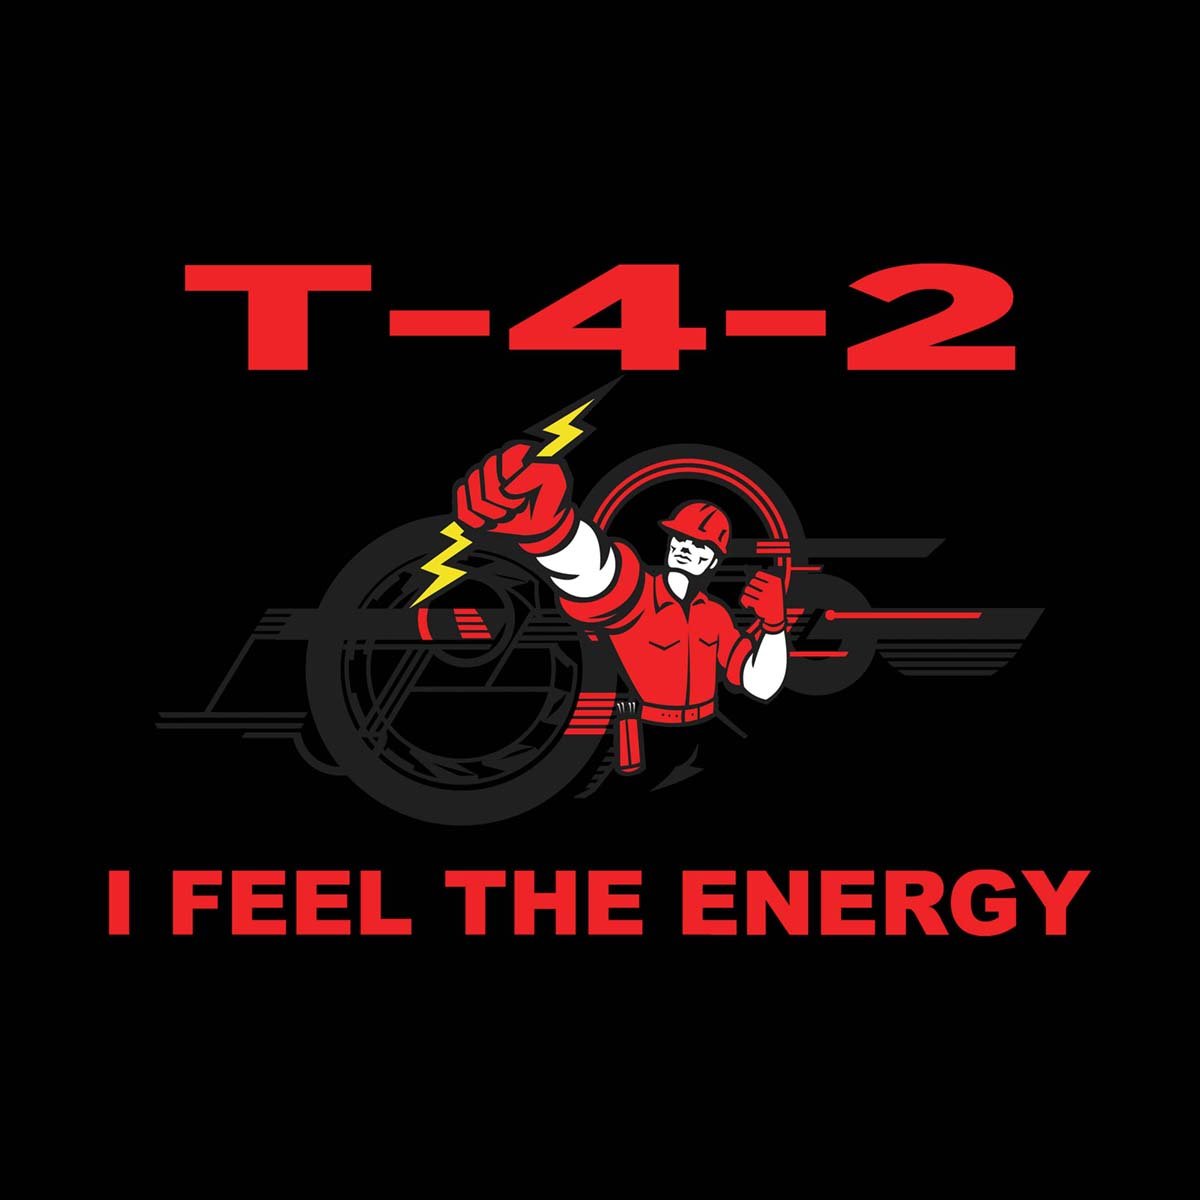 T-4-2 "Energy" 1 Tee